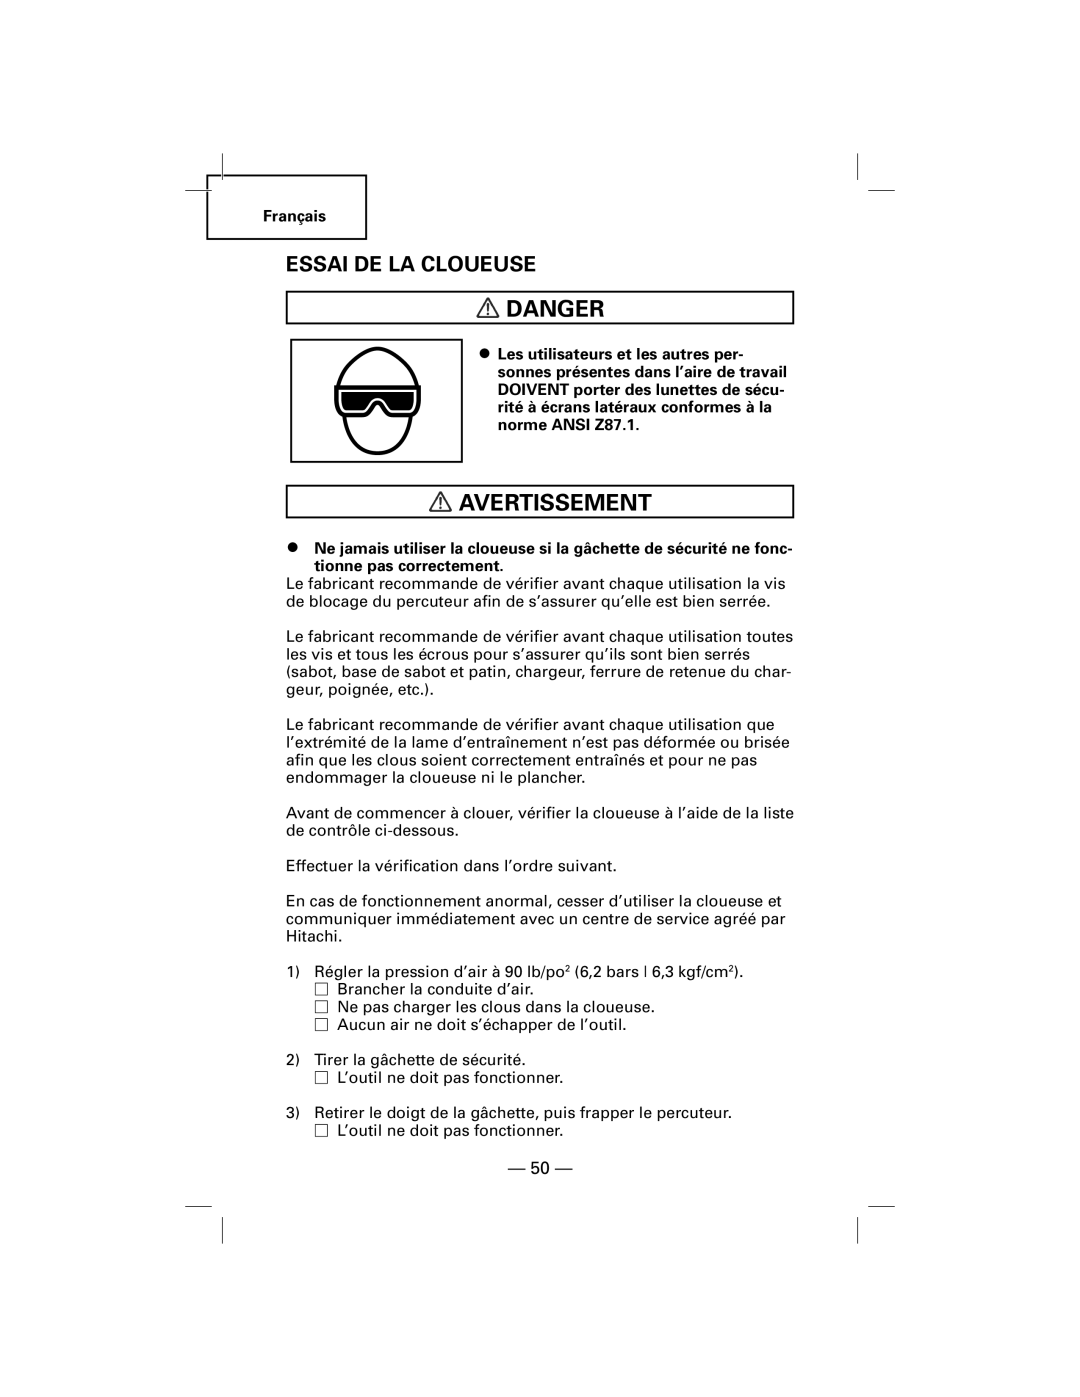 Hitachi NT50AGF manual Essai De La Cloueuse, Danger, Avertissement 